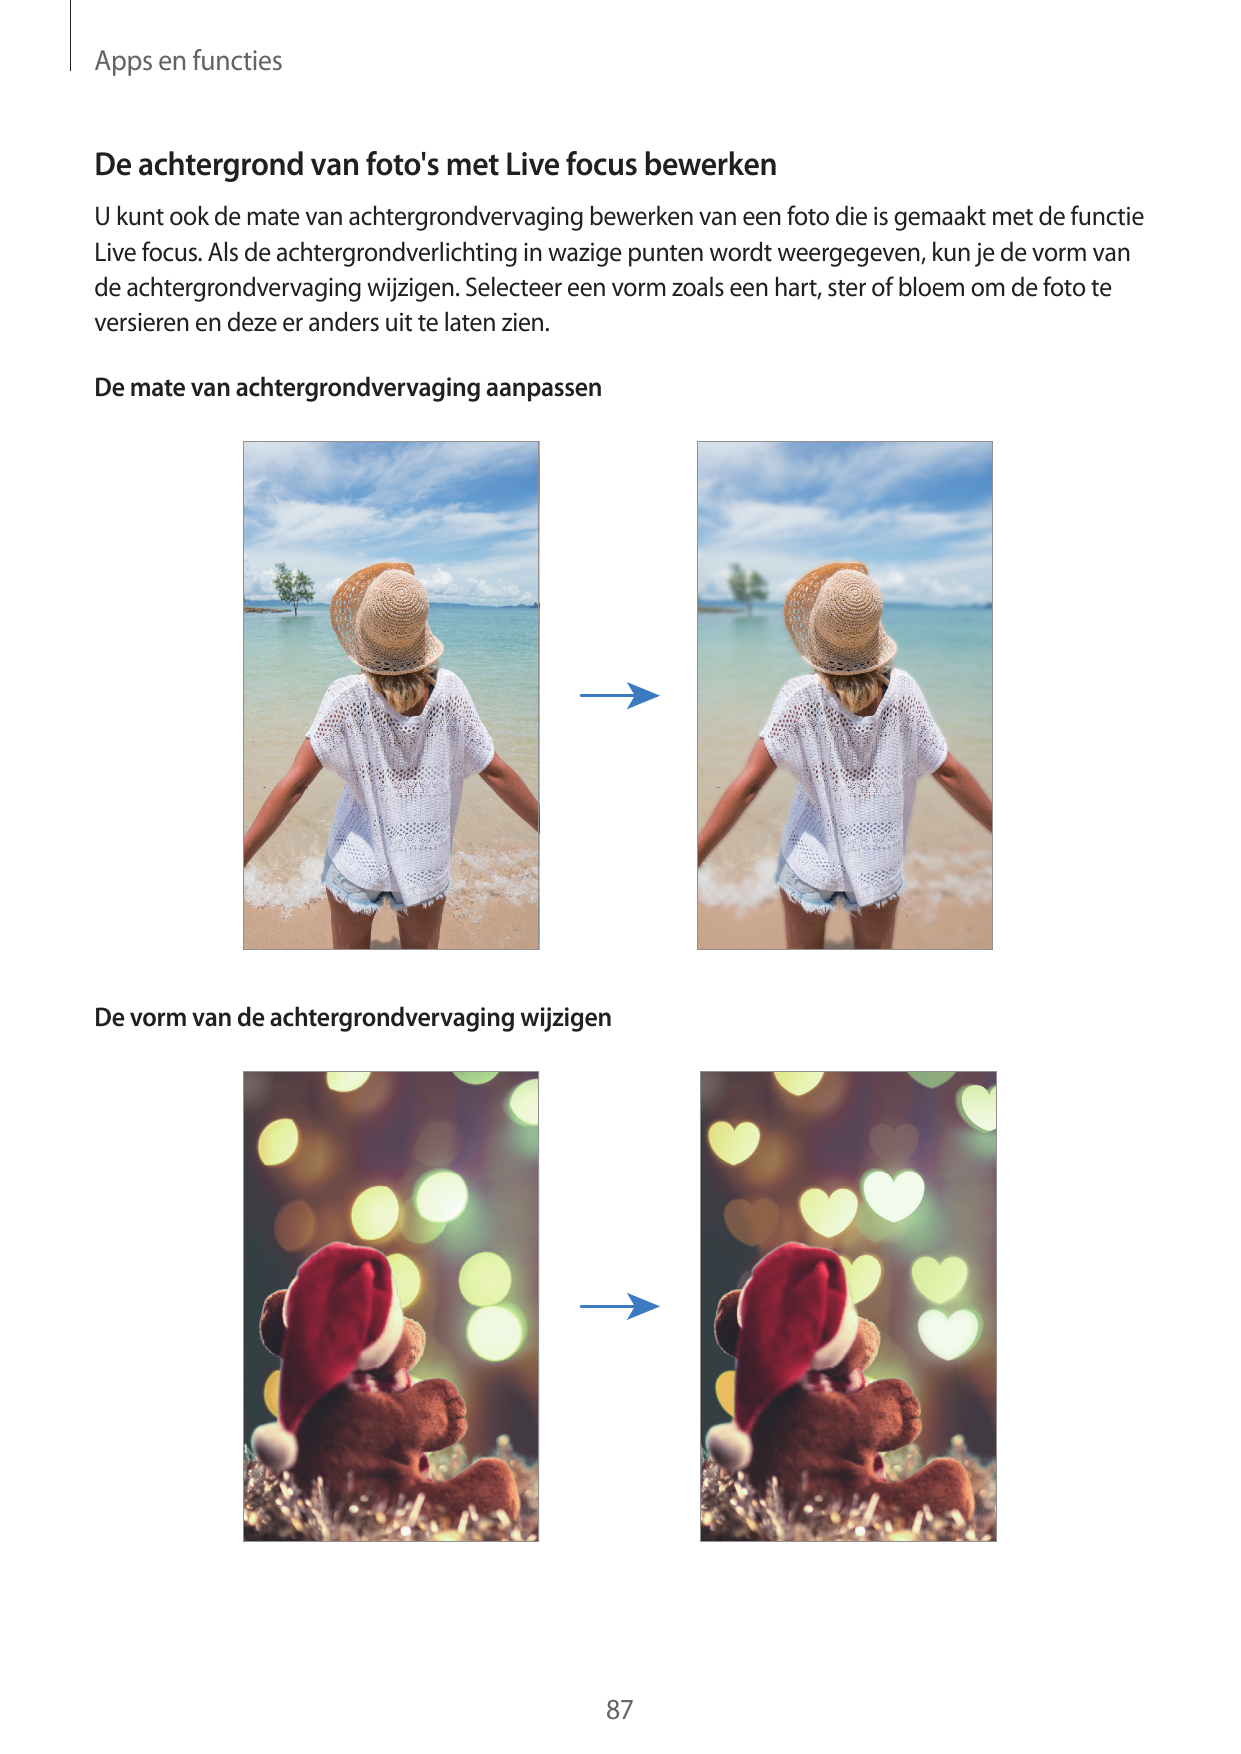 Apps en functiesDe achtergrond van foto's met Live focus bewerkenU kunt ook de mate van achtergrondvervaging bewerken van een fo